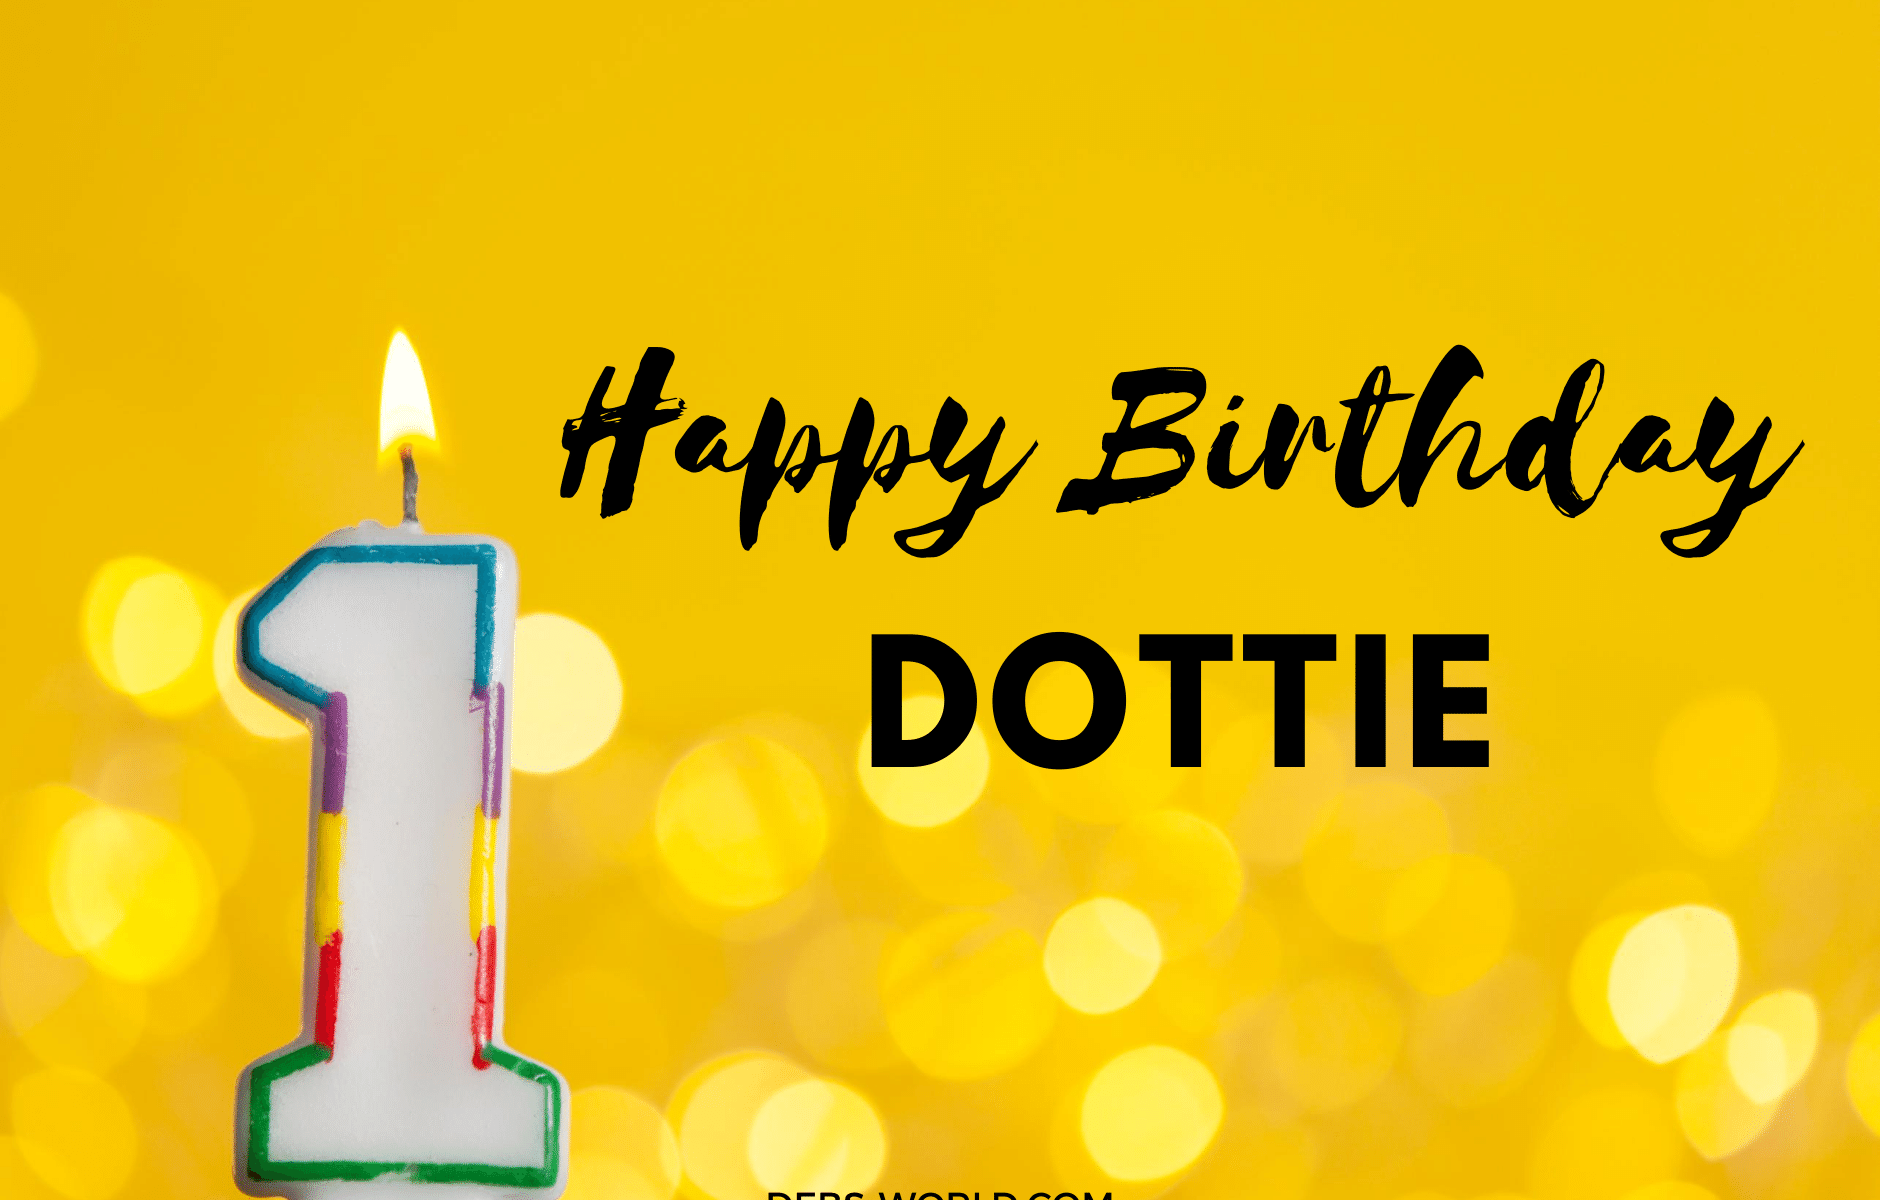 Dottie's first birthday